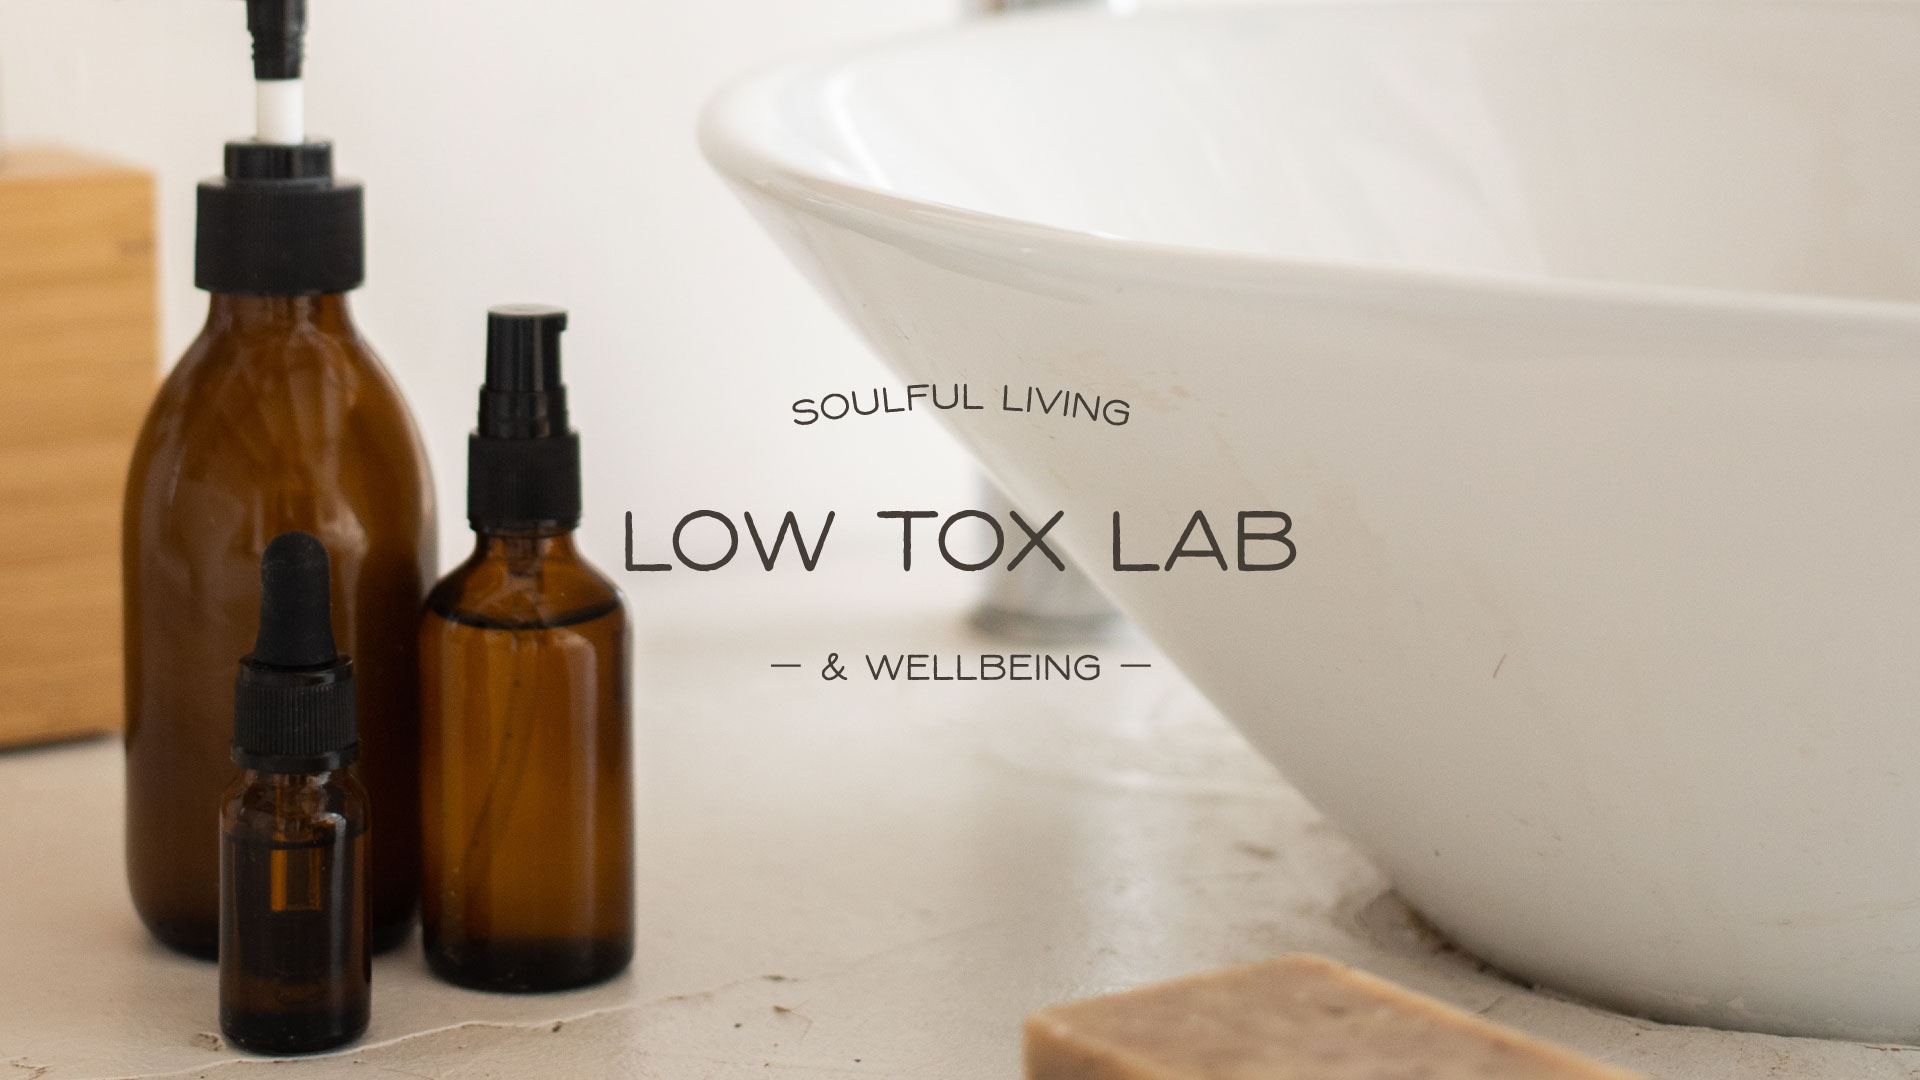 low tox lab branding, packaging design